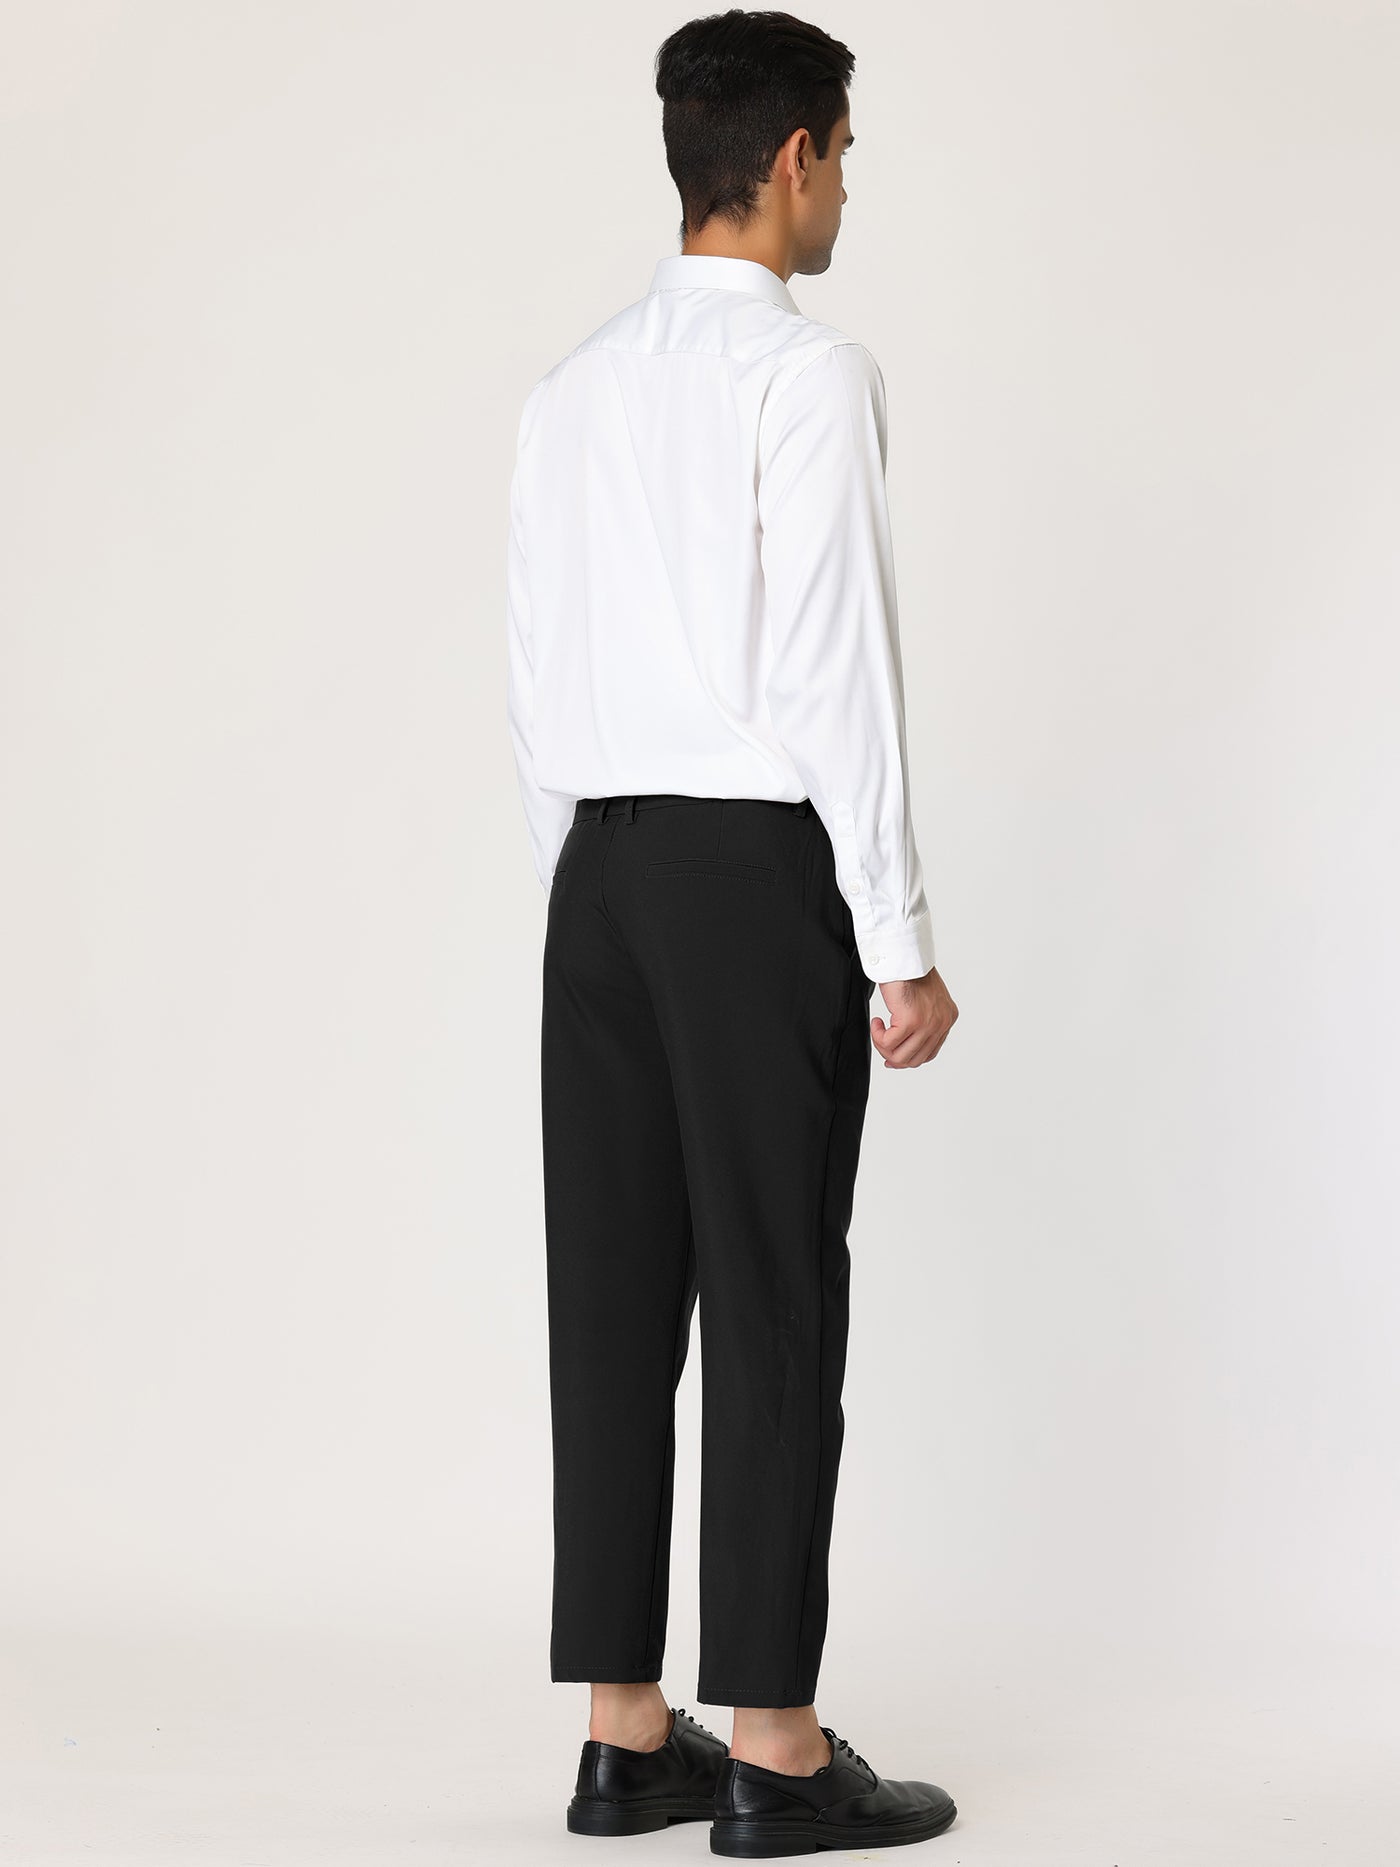 Bublédon Flat Front Solid Color Crop Ankle-Length Dress Pants